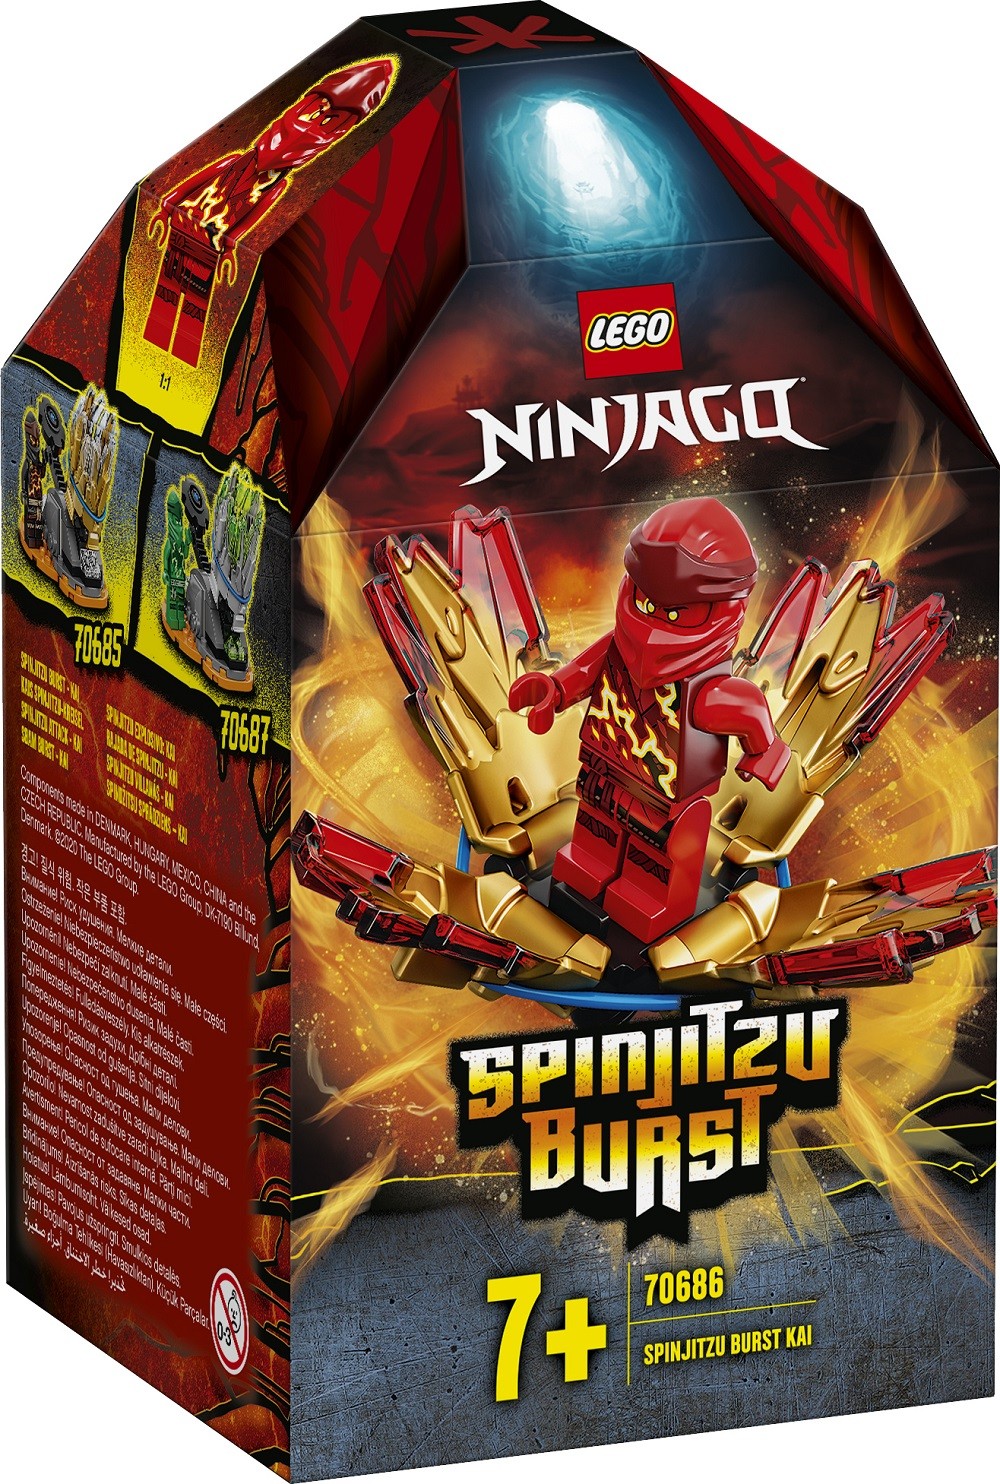 Lego Ninjago 70686 Spinjitzu Burst Kai - ninja burst roblox